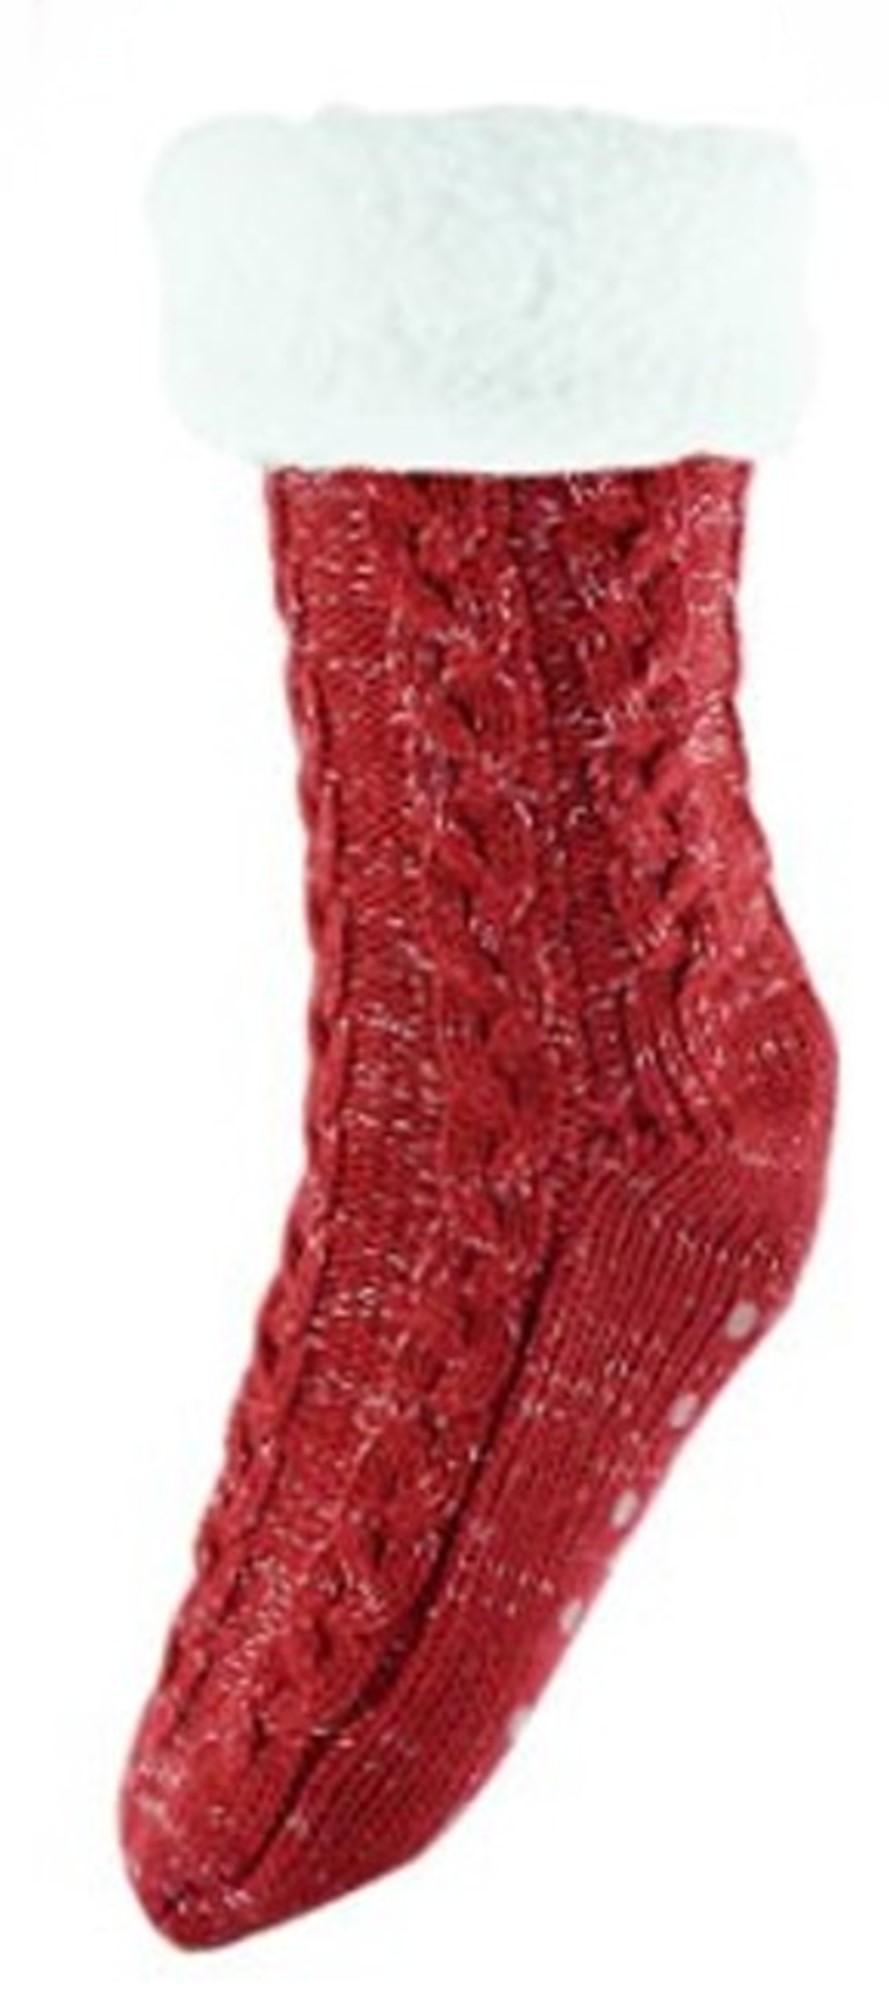 Chunky Knit Socks Red.jpg  by Thingimijigs